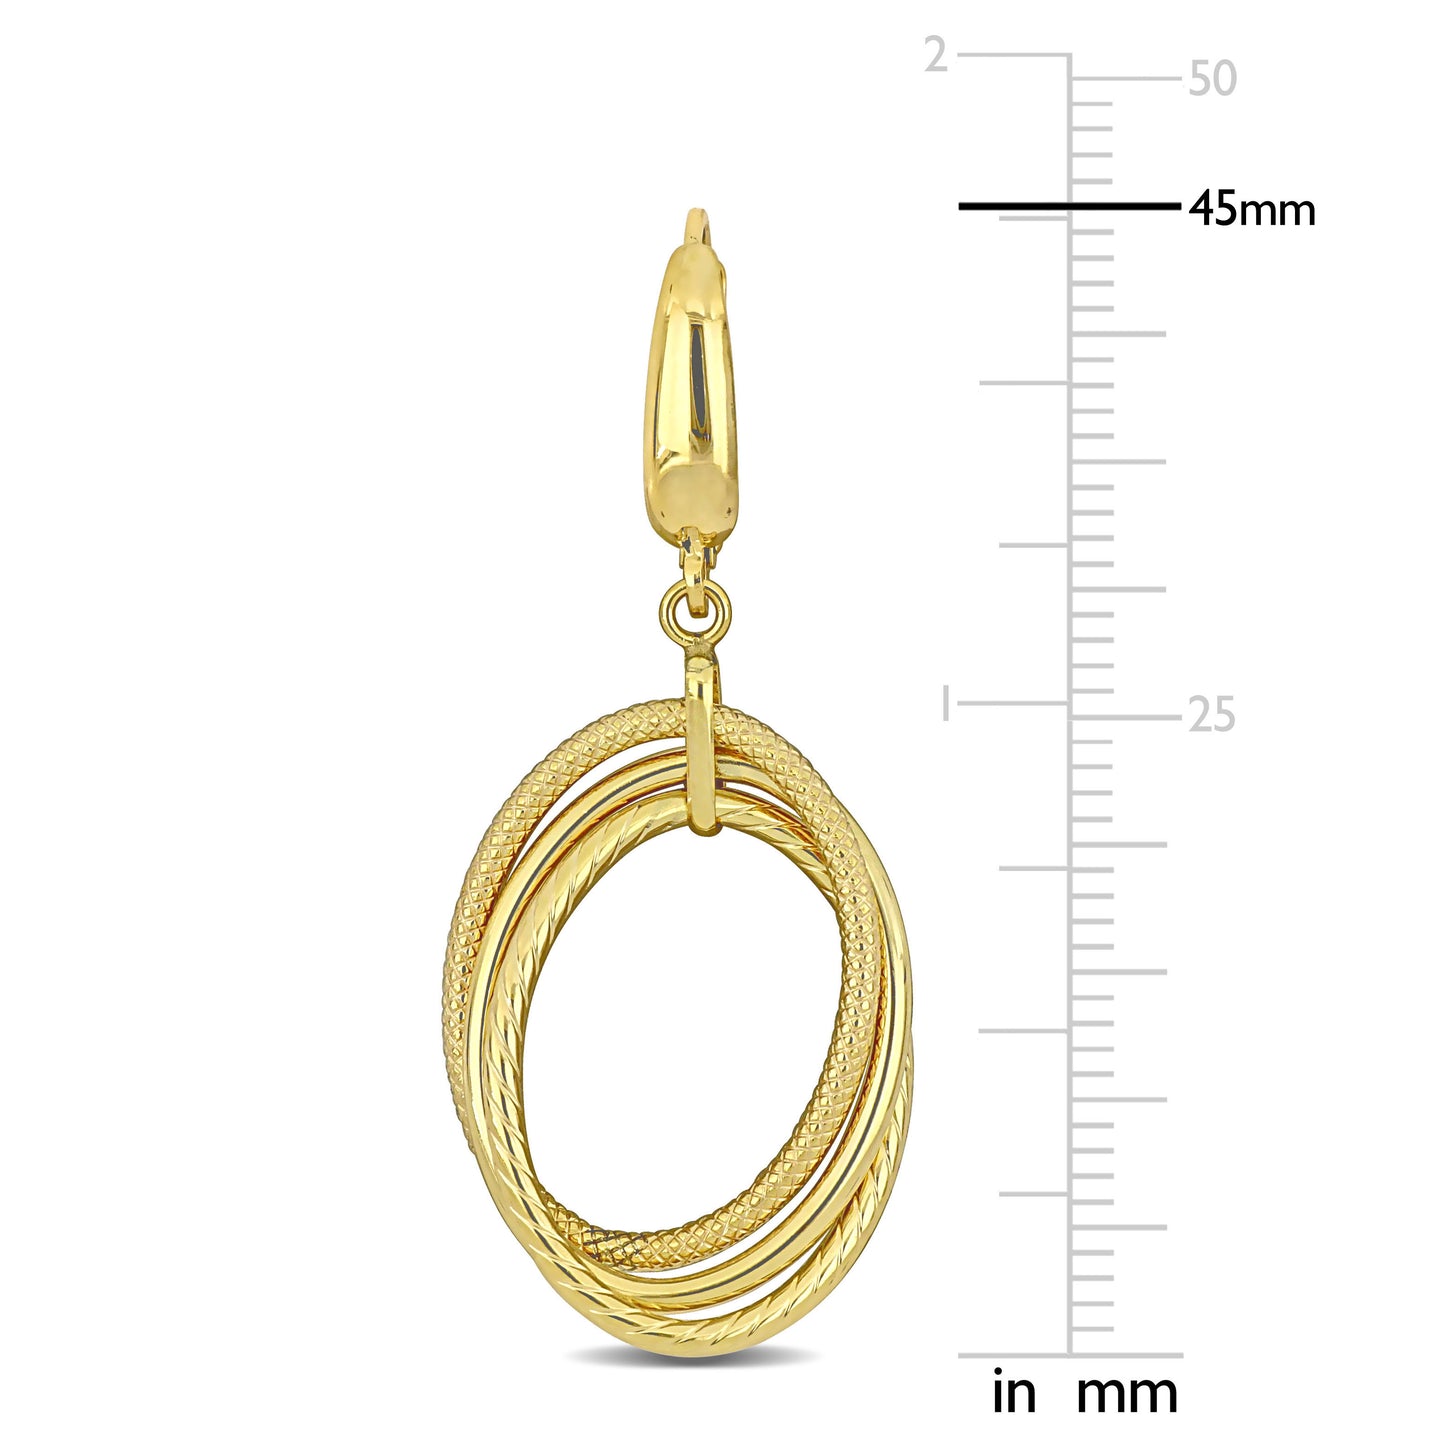 Hanging tipple Hoop Earrings in 10k Yellow Gold